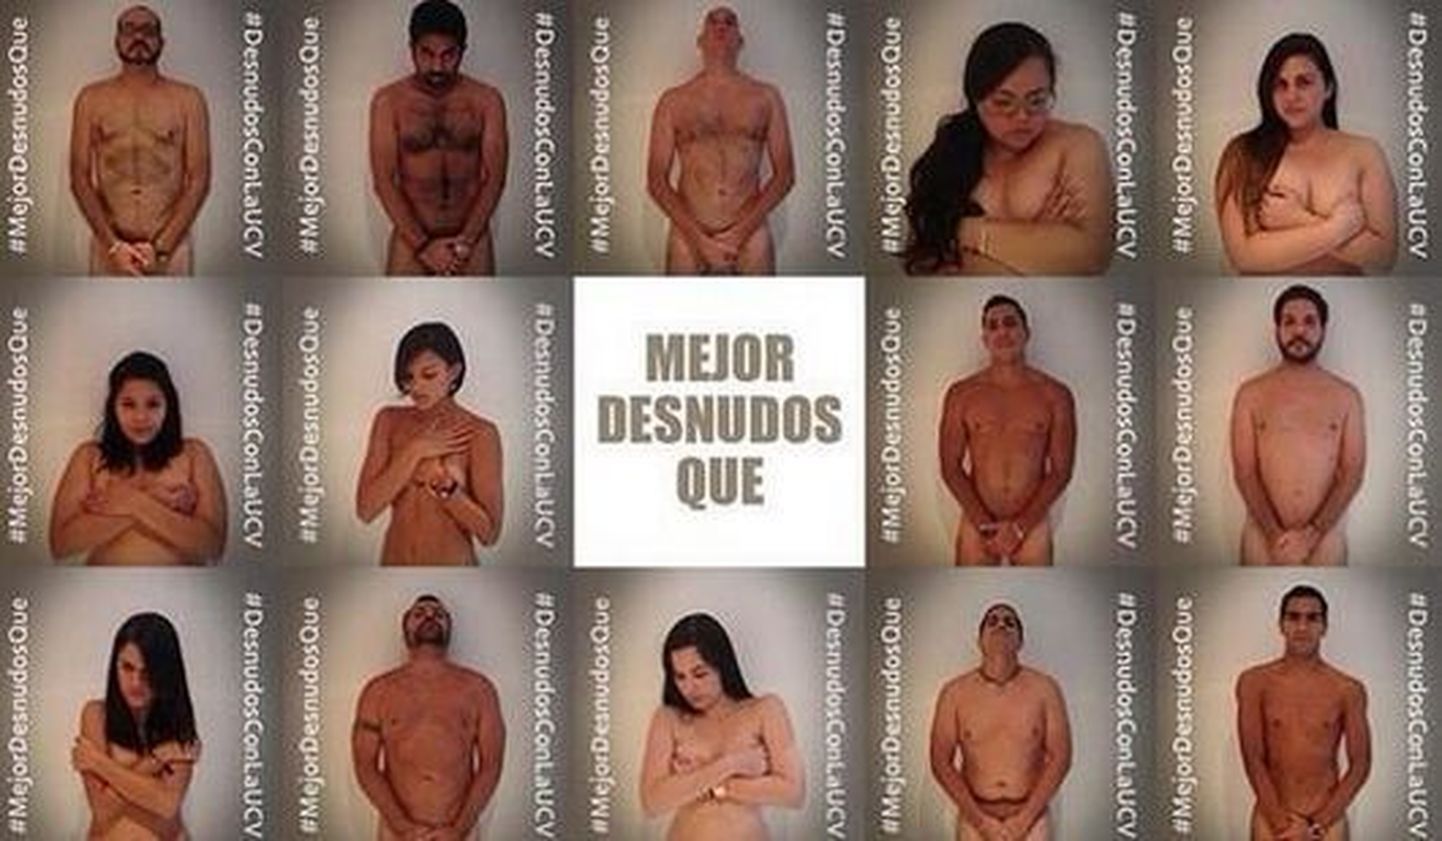 Venezuelas postitatakse sotsiaalmeediasse alastipilte protestimaks politseivägivalla vastu